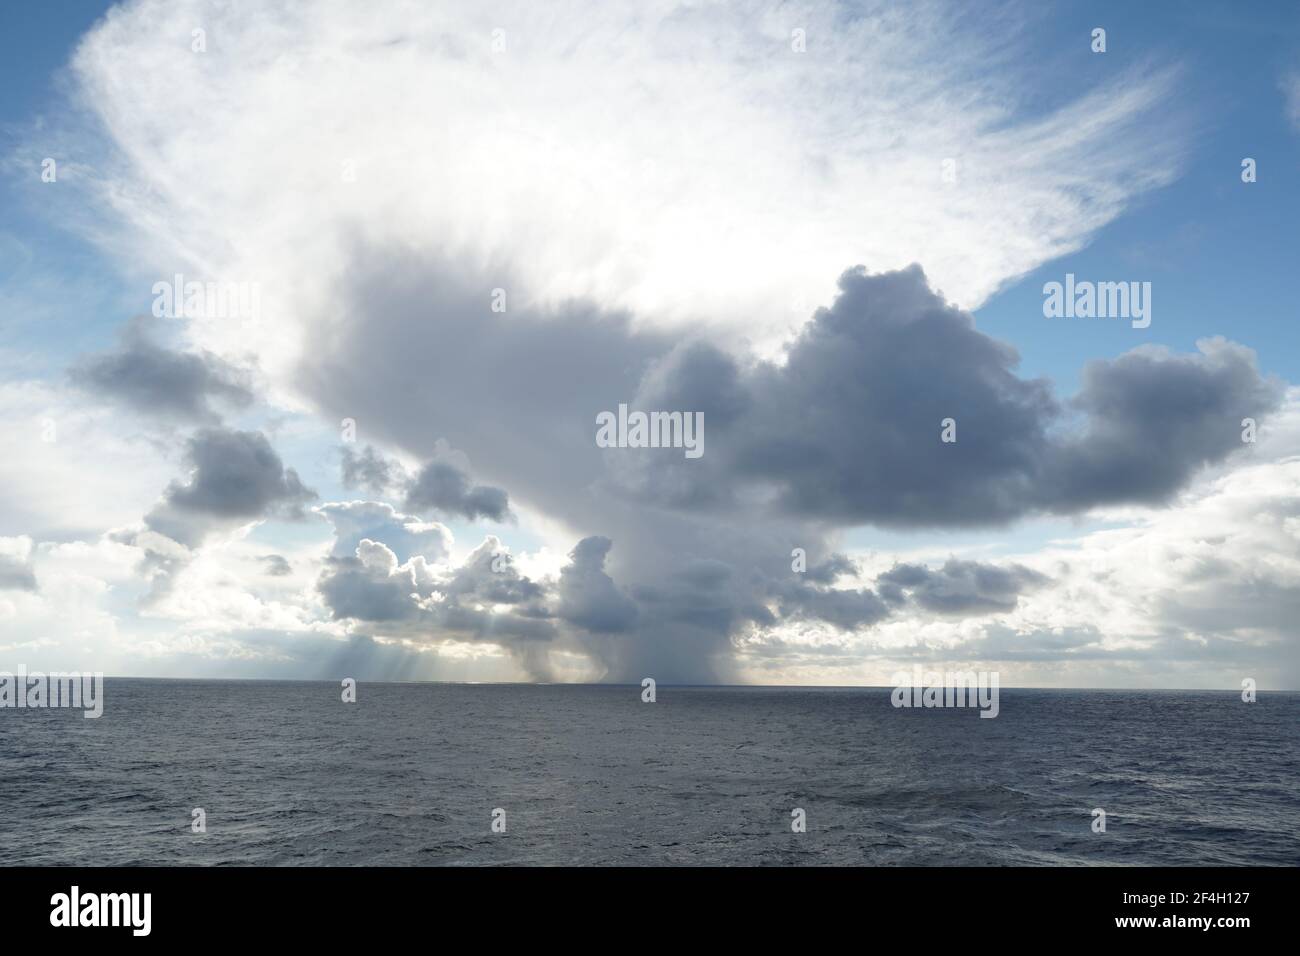 Precipitacion atmosferica fotografías e imágenes de alta resolución - Alamy